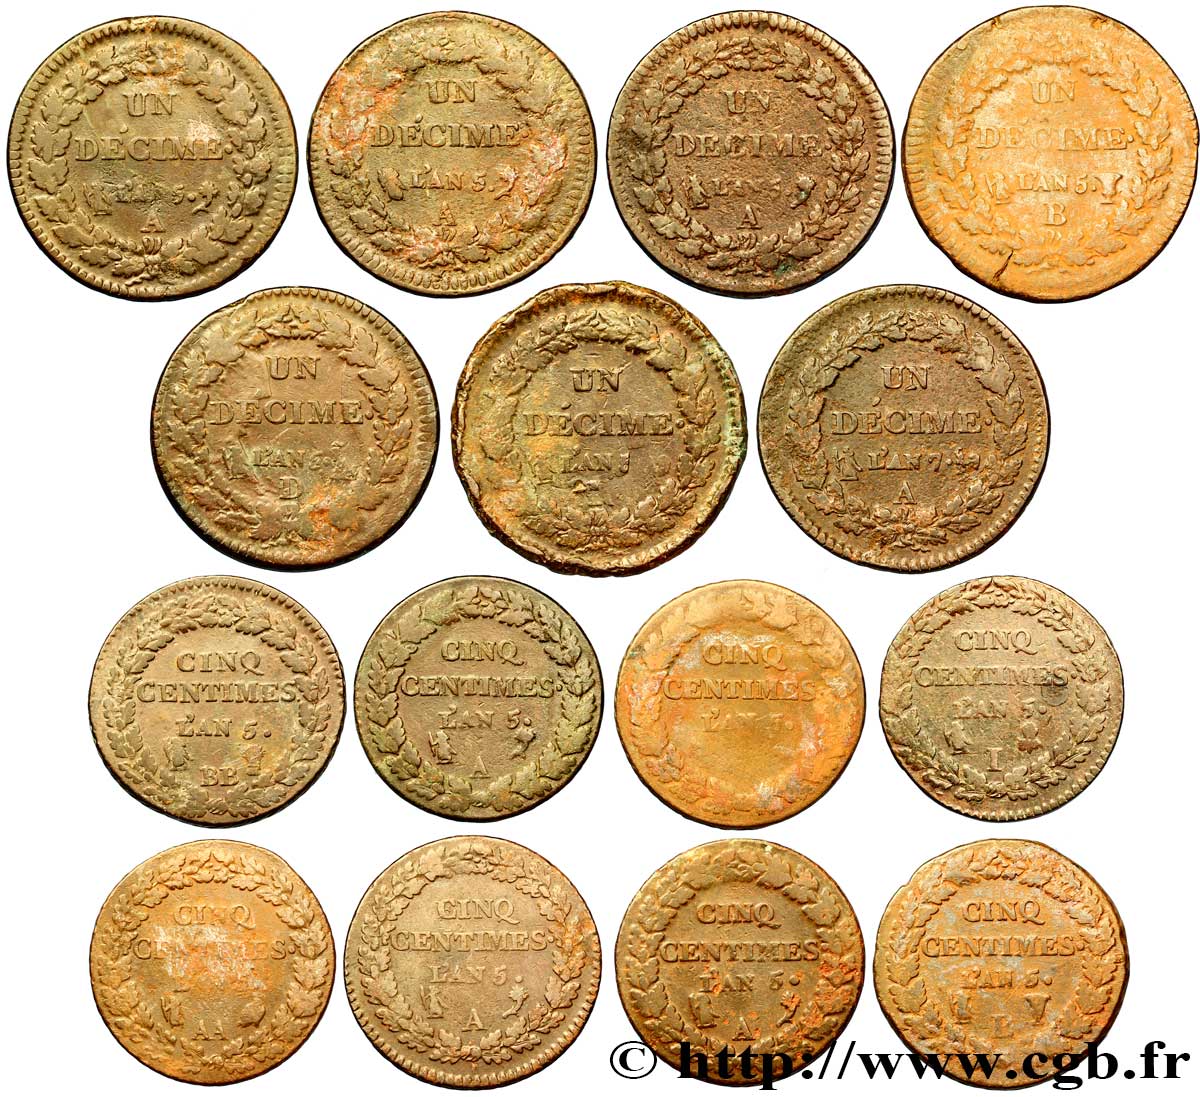 Lot de 7 pièces d’Un décime Dupré, grand module (F.129) et de 8 pièces de Cinq centimes Dupré, grand module (F.115) n.d. - F.-/- RC/BC 